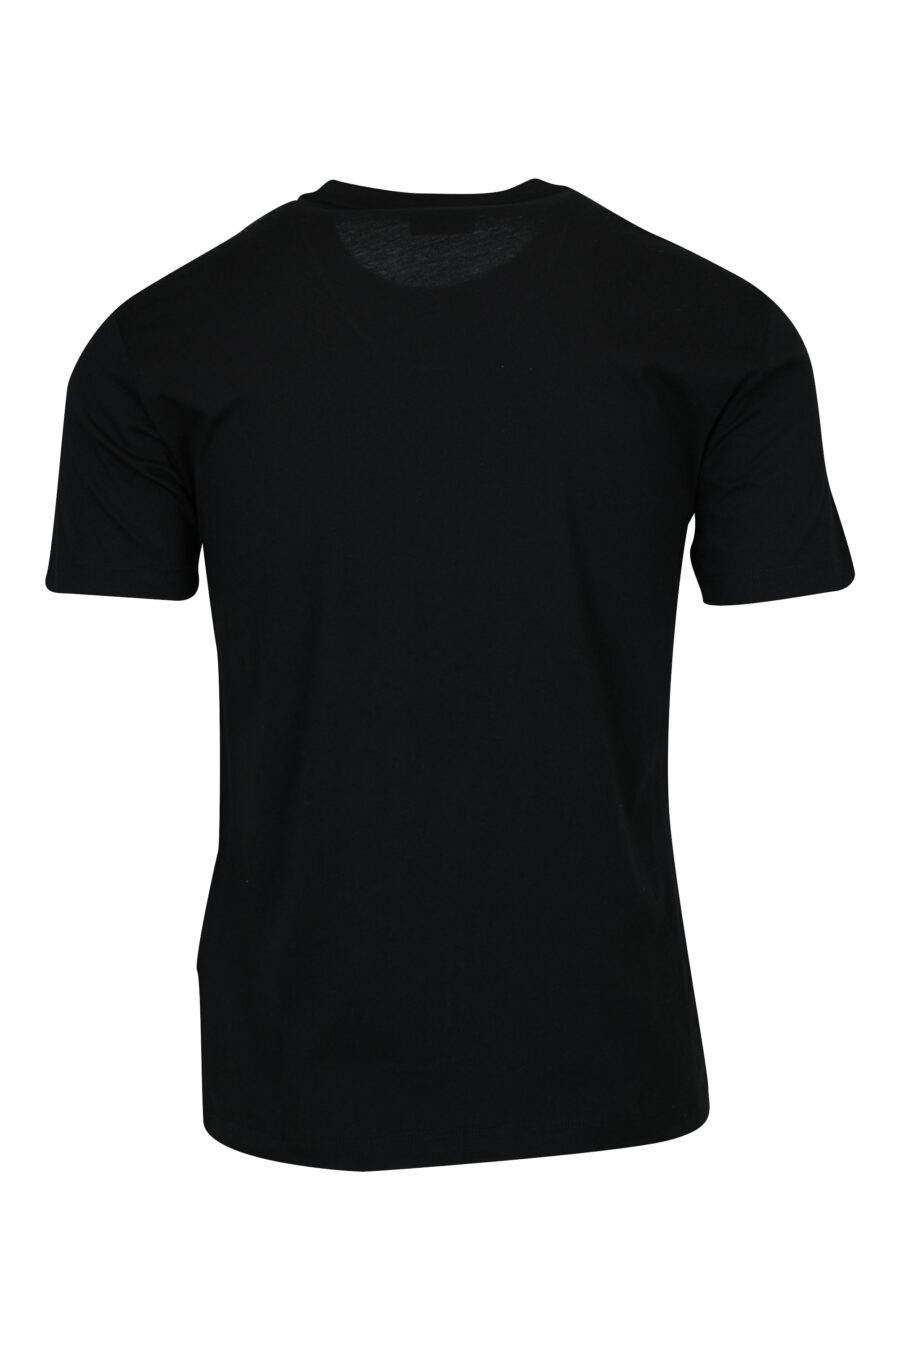 Schwarzes T-Shirt mit "lux identity" Maxilogo im Farbverlauf - 8058947508099 1